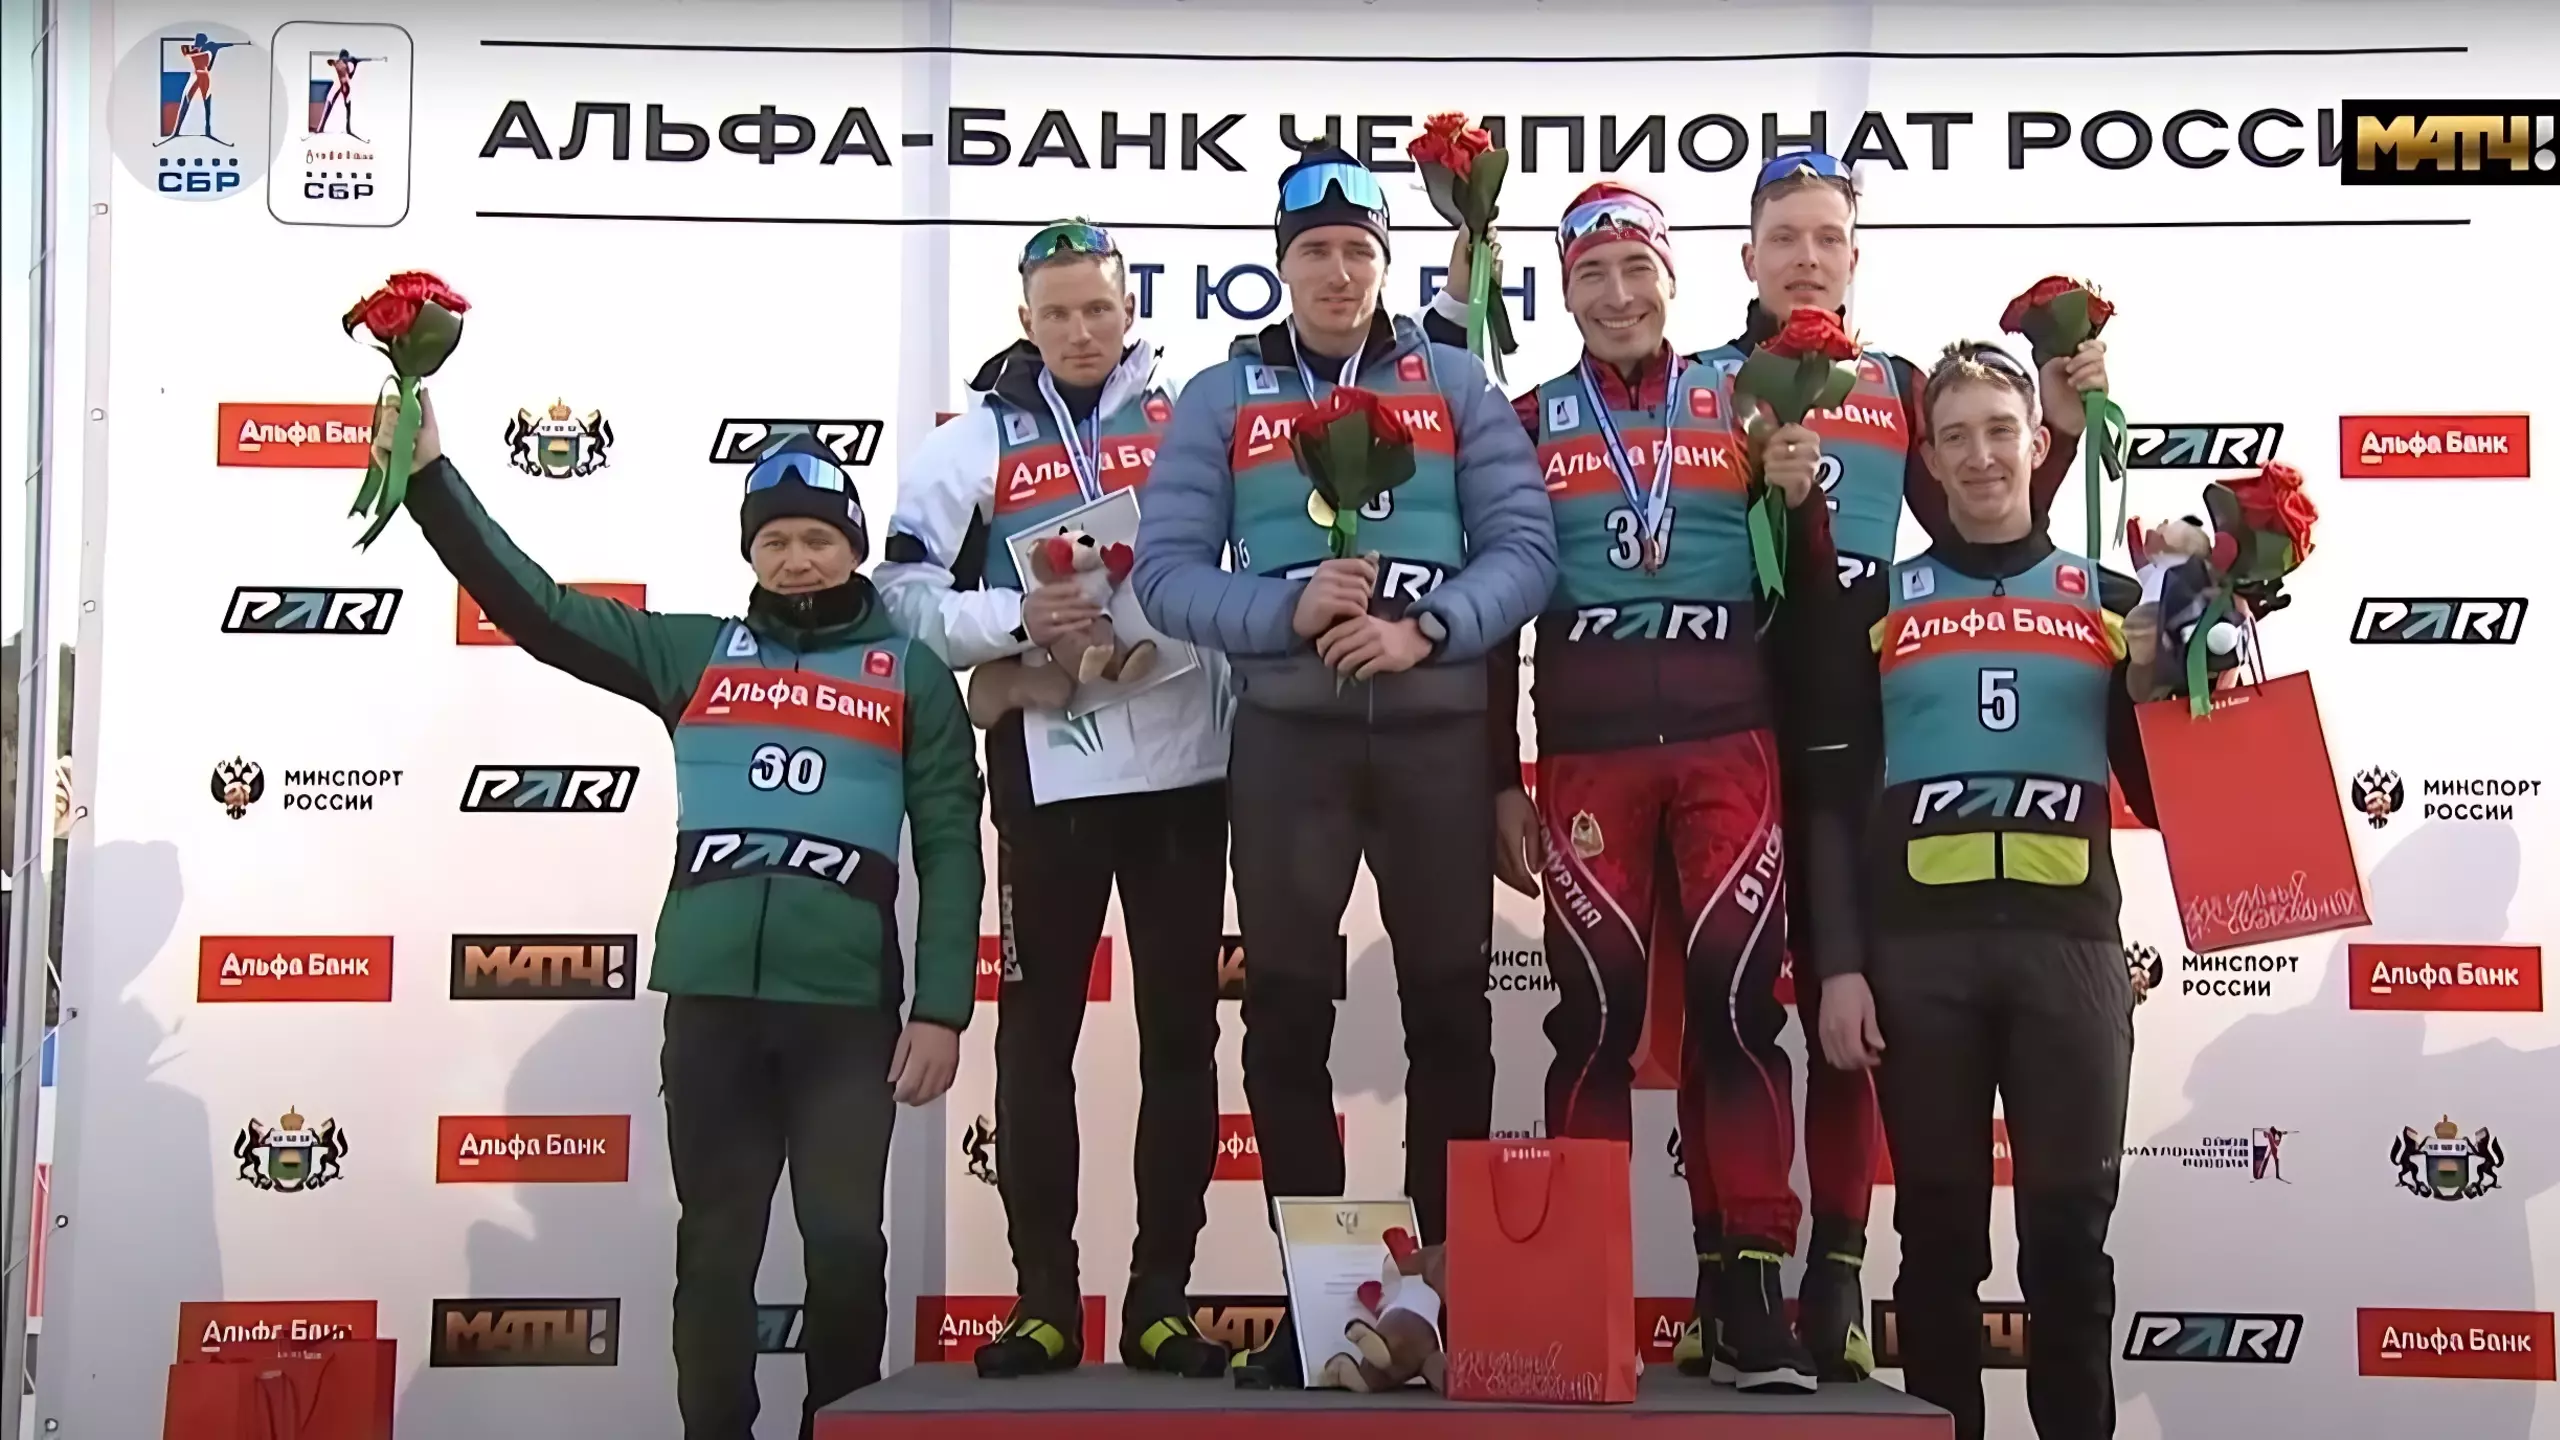 Спортсмен из Удмуртии завоевал бронзу на чемпионате России по биатлону